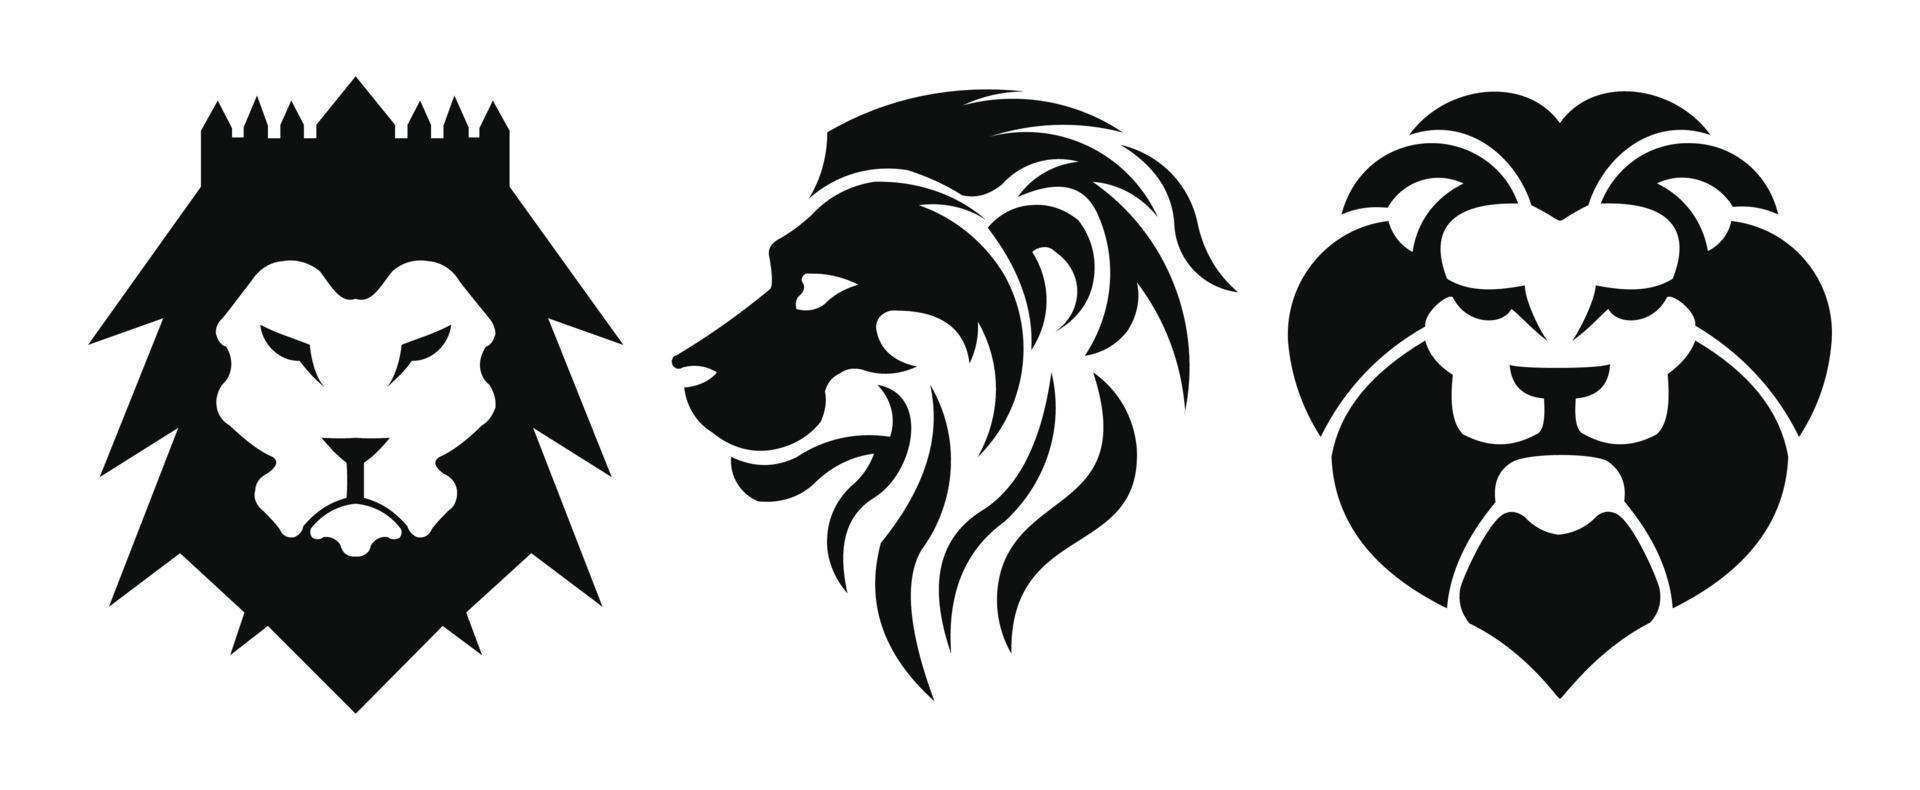 leeuwenkop - vector logo sjabloon creatieve illustratie. dierlijke wilde kat gezicht grafisch teken. trots, sterk, machtsconcept symbool. ontwerpelement